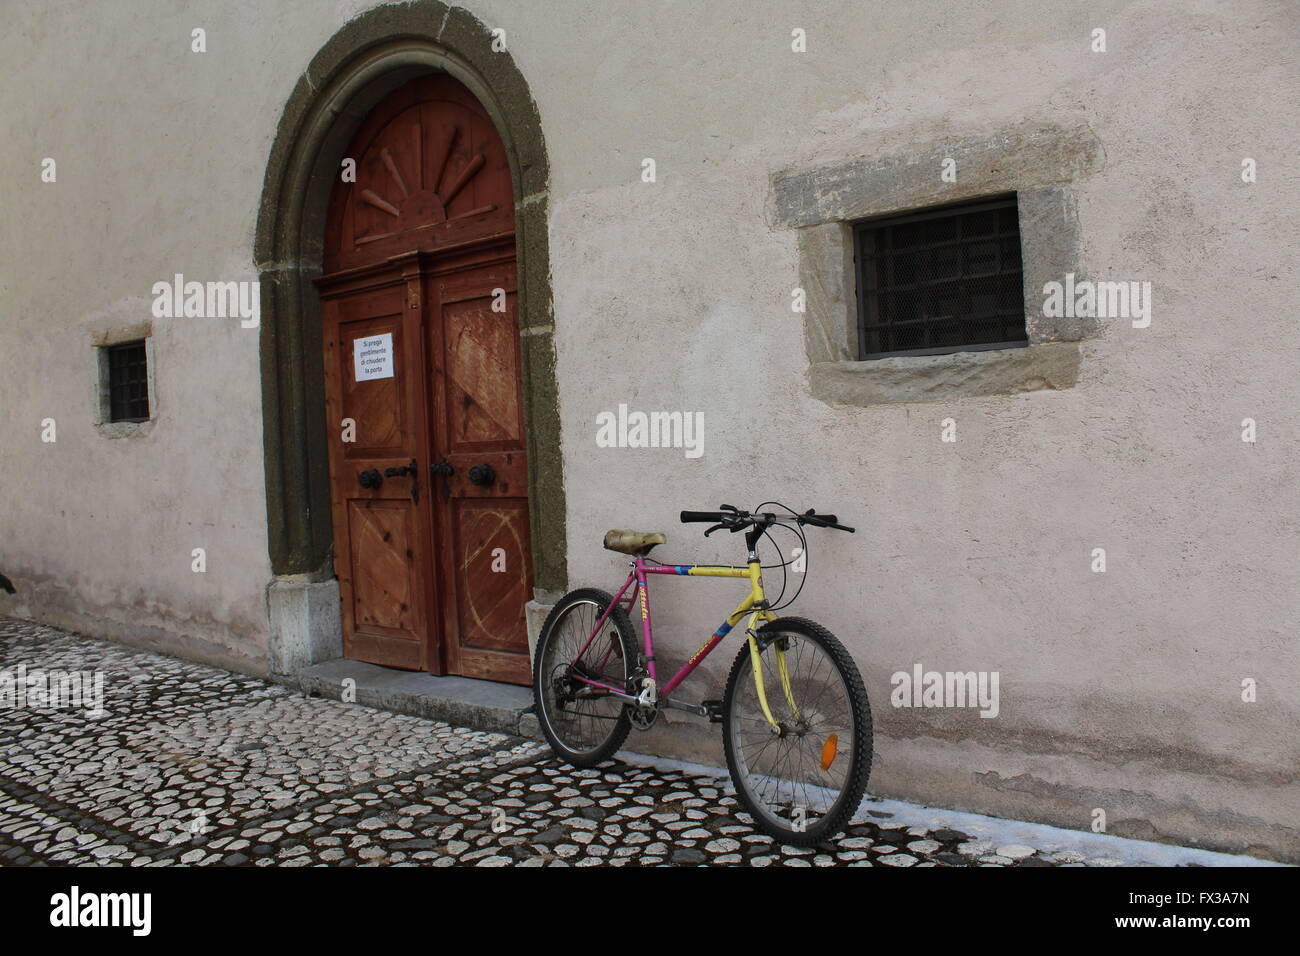 Un vélo de montagne aux couleurs vives s'appuie contre un mur de l'église rustique dans la ville de Pozza di Fassa, Trentin, Italie Banque D'Images